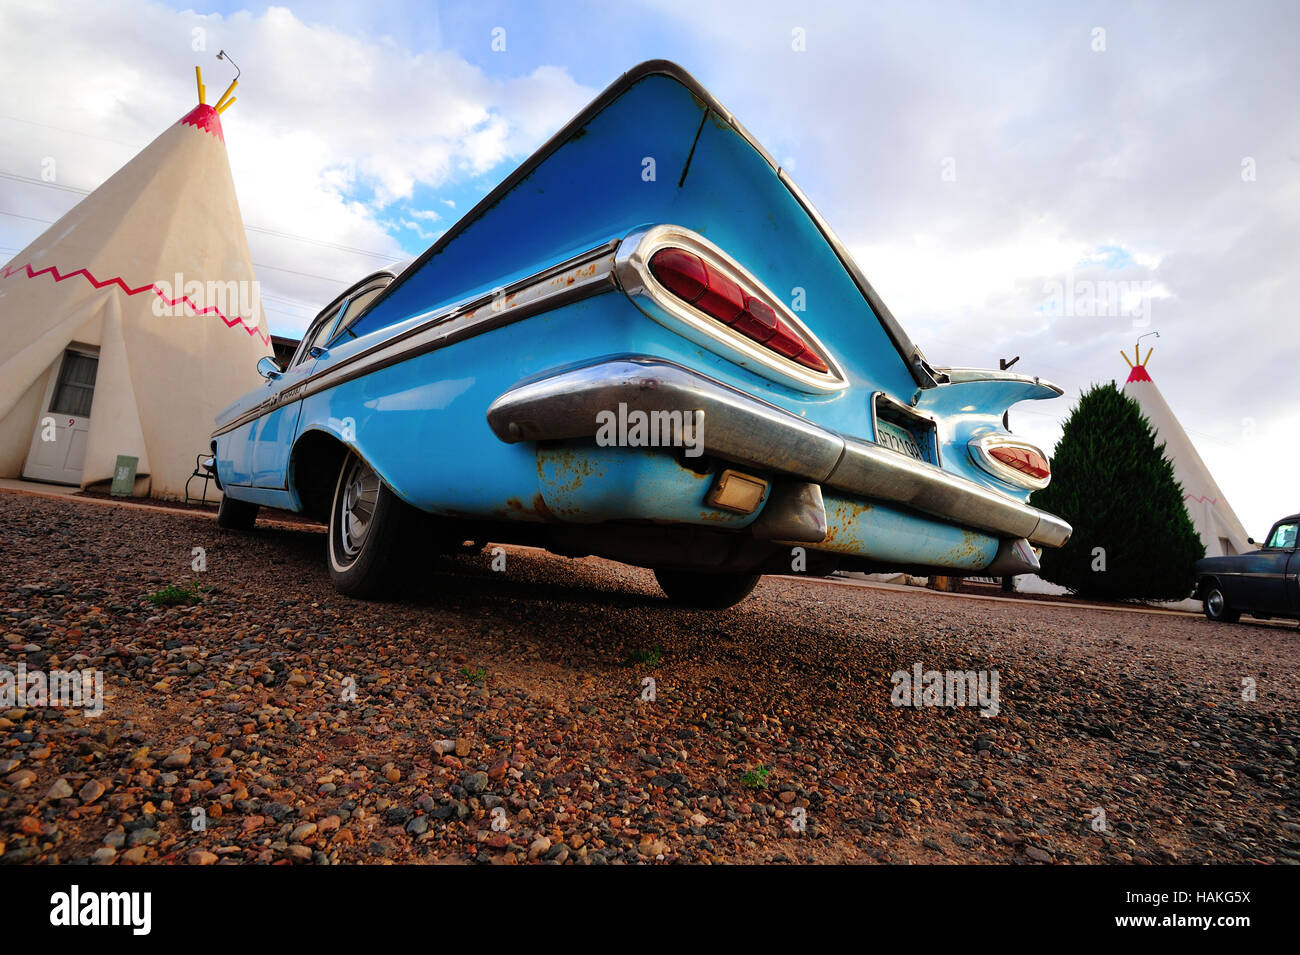 Ein Chevrolet Impala liegt außerhalb der Wigwam-Zimmer im berühmten WigWam Motel an der Route 66 in Holbrook Arizona. Stockfoto